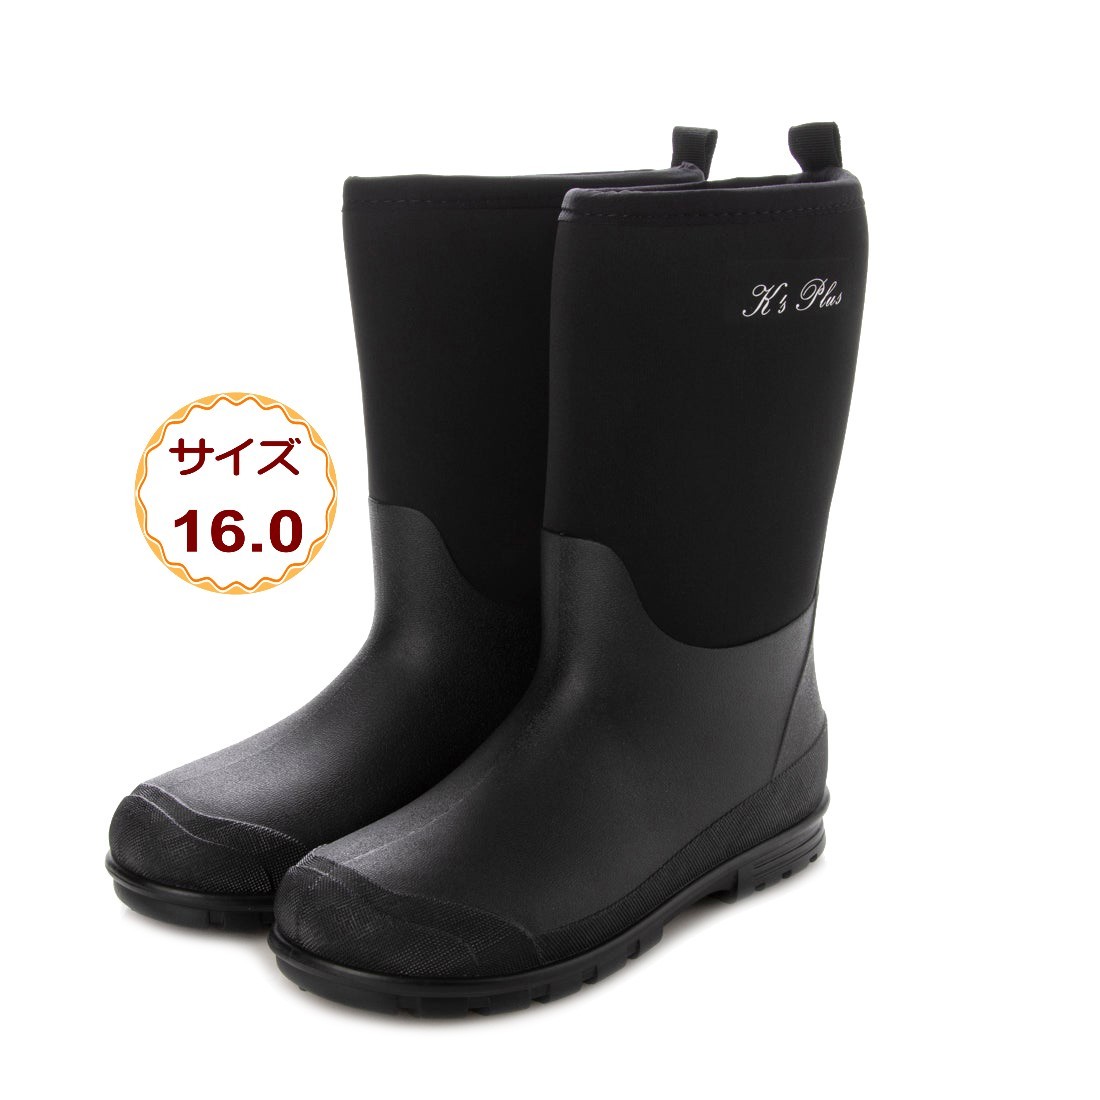 Черные 16,0 см детские девочки дождевые ботинки дождевые ботинки дождевые сапоги сапоги Neopen Водонепроницаемые 21077-Blk-160